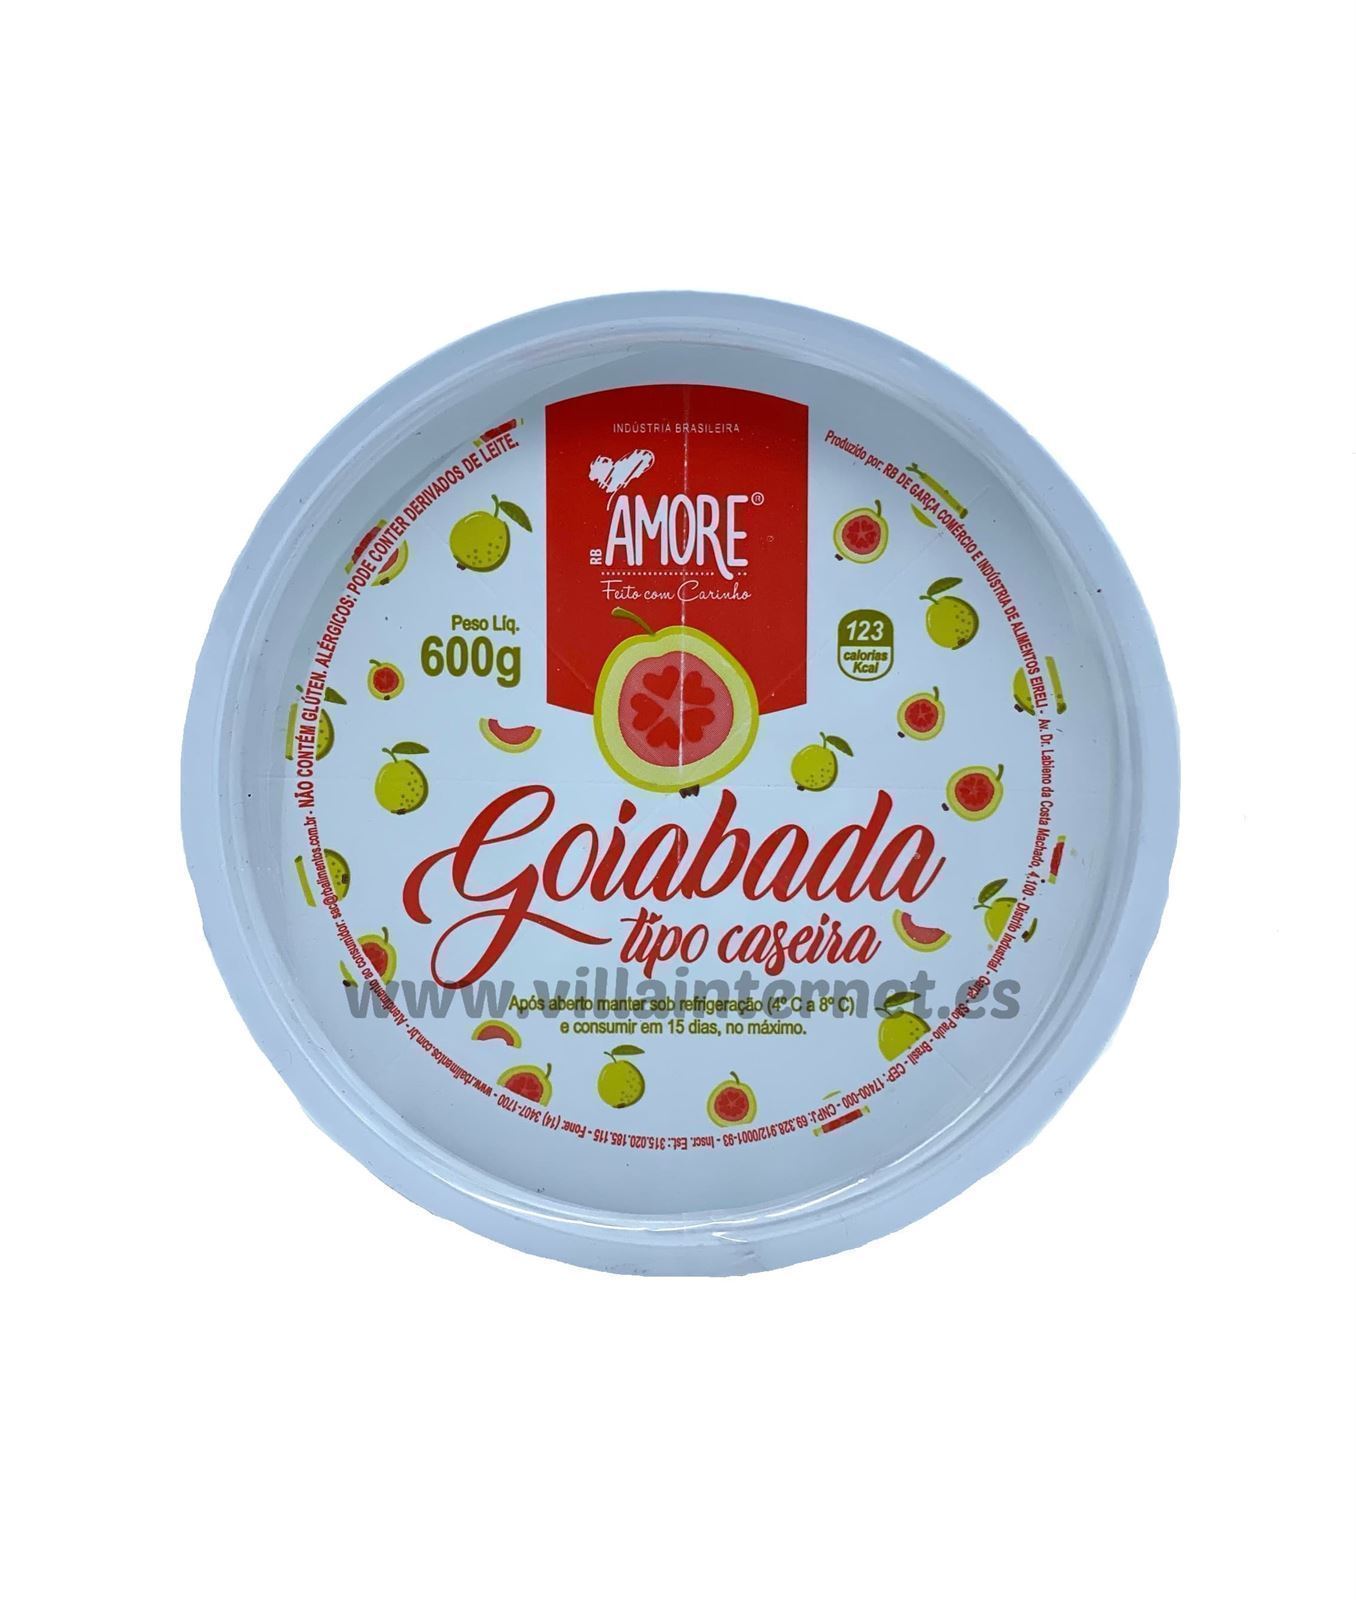 Pasta de guayaba Goiabada 600g - Imagen 1